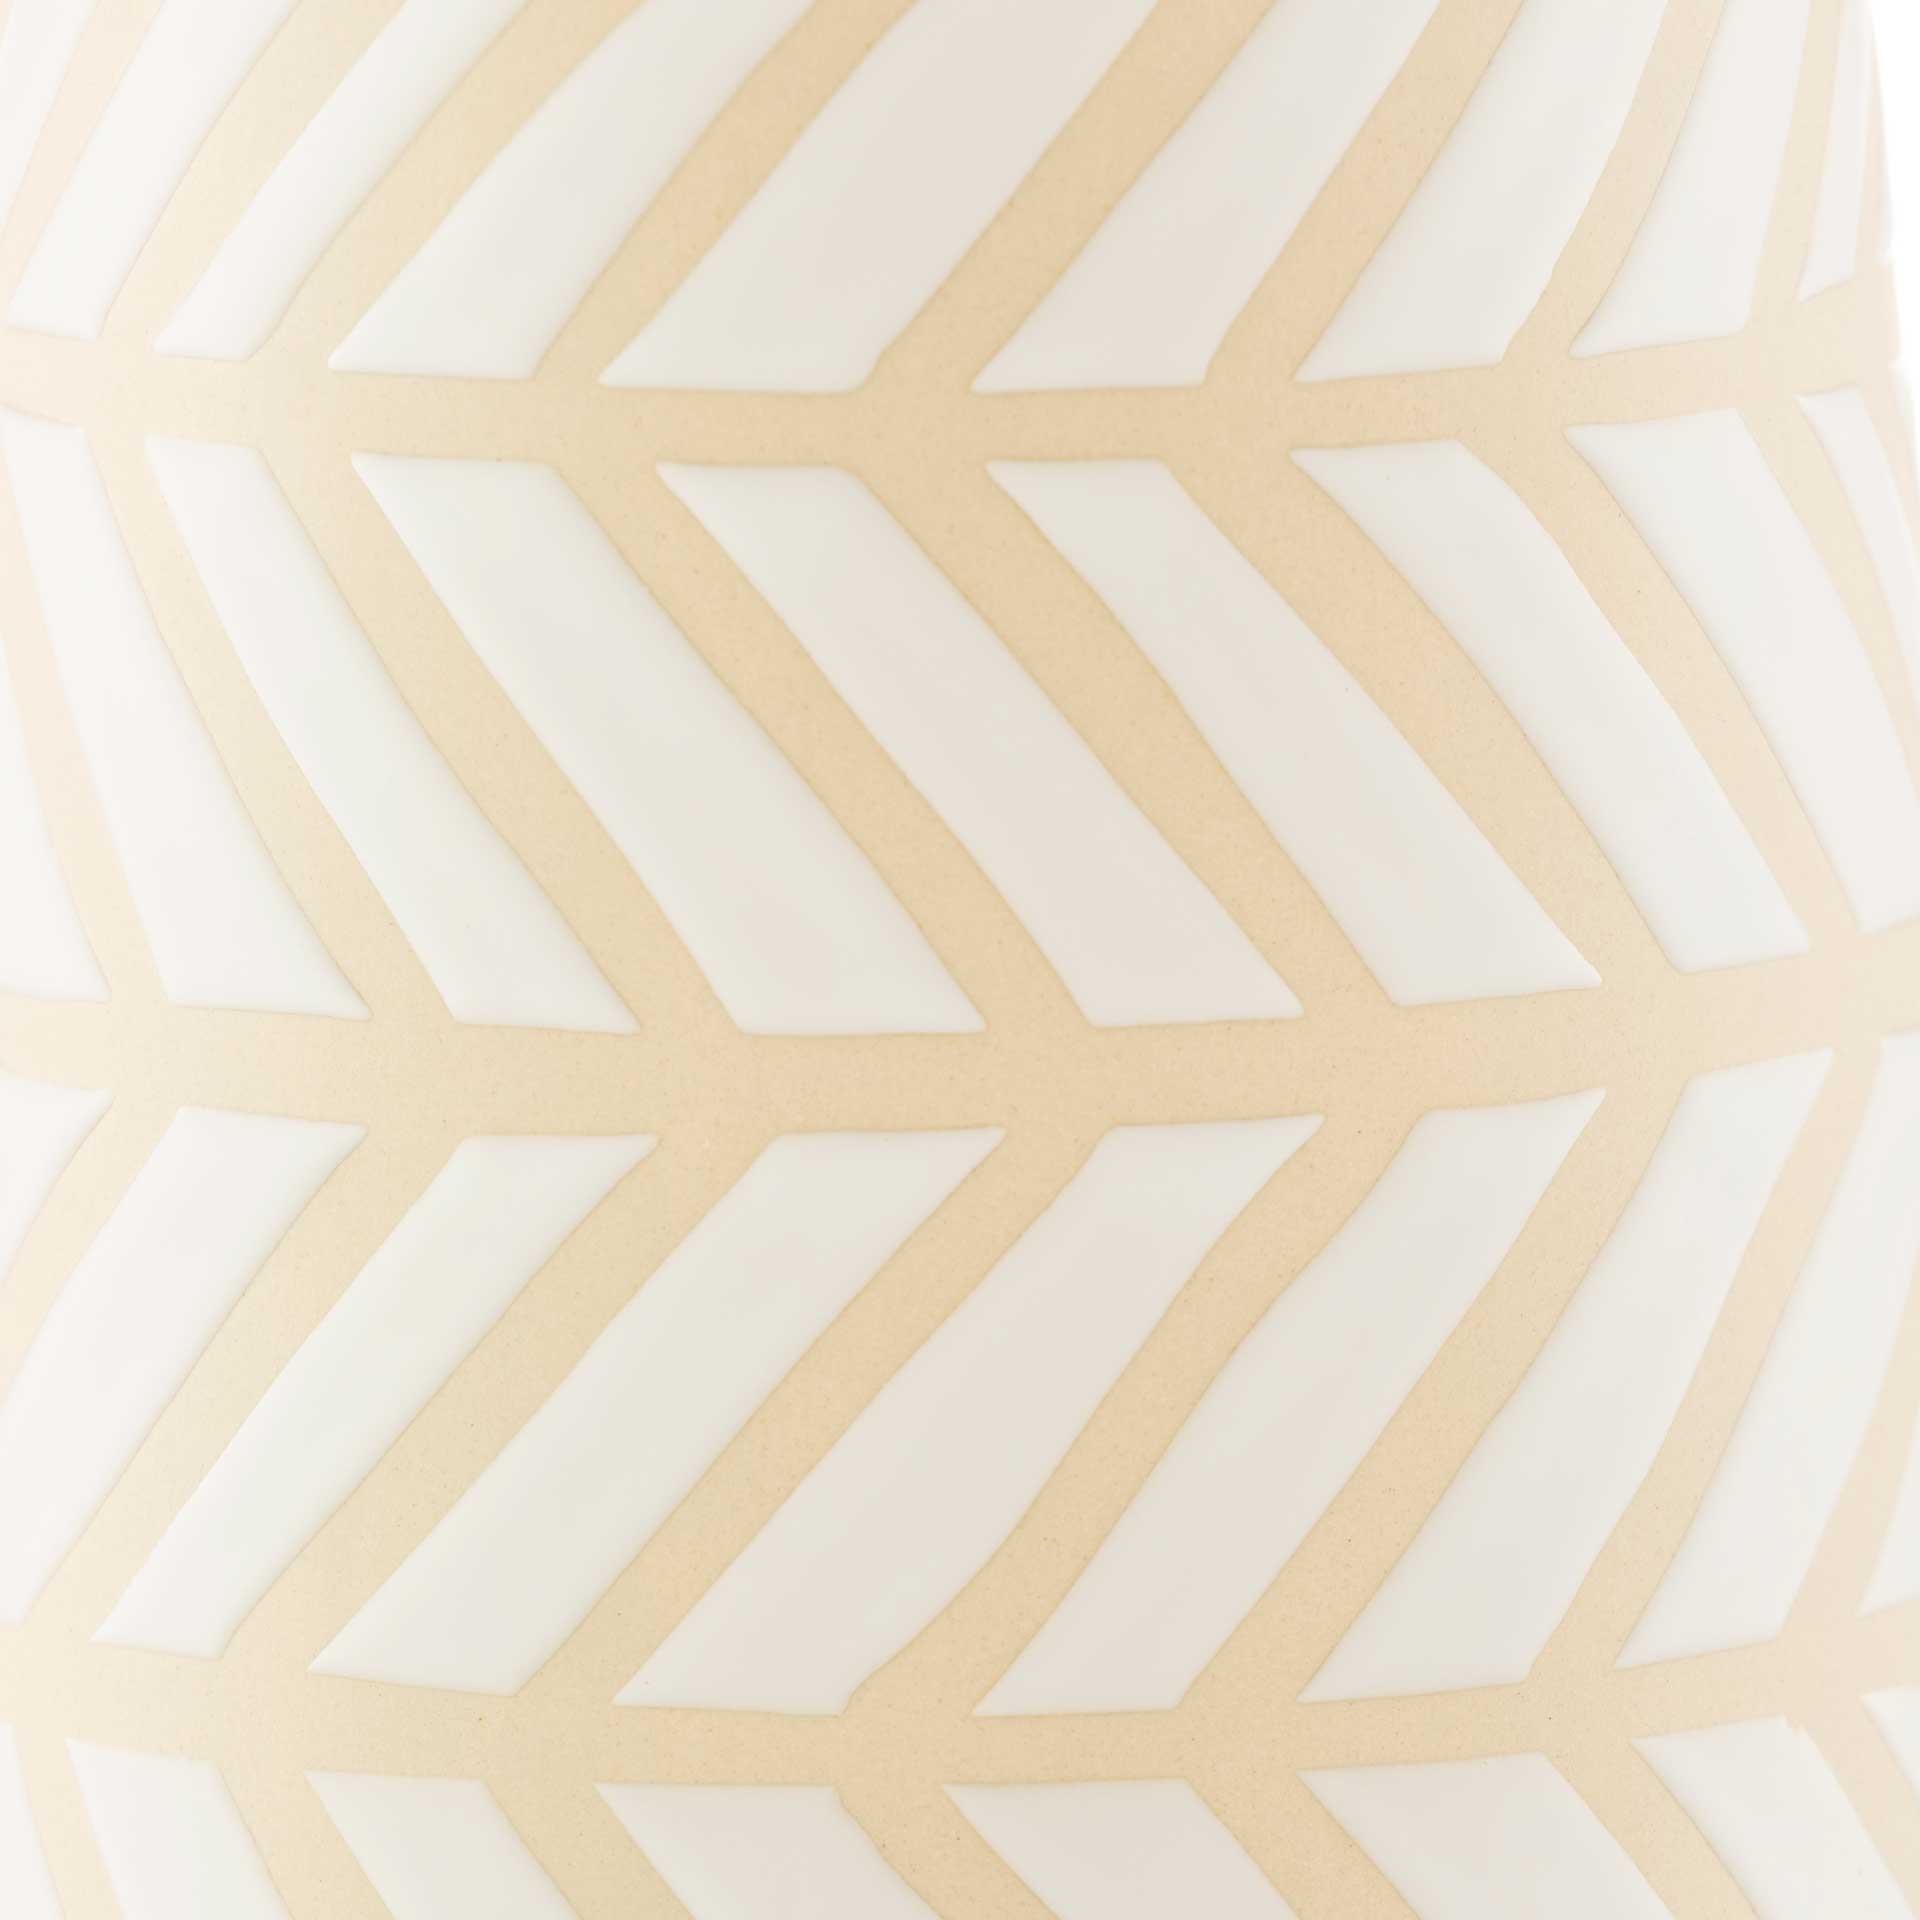 Kira Vase Cream/White